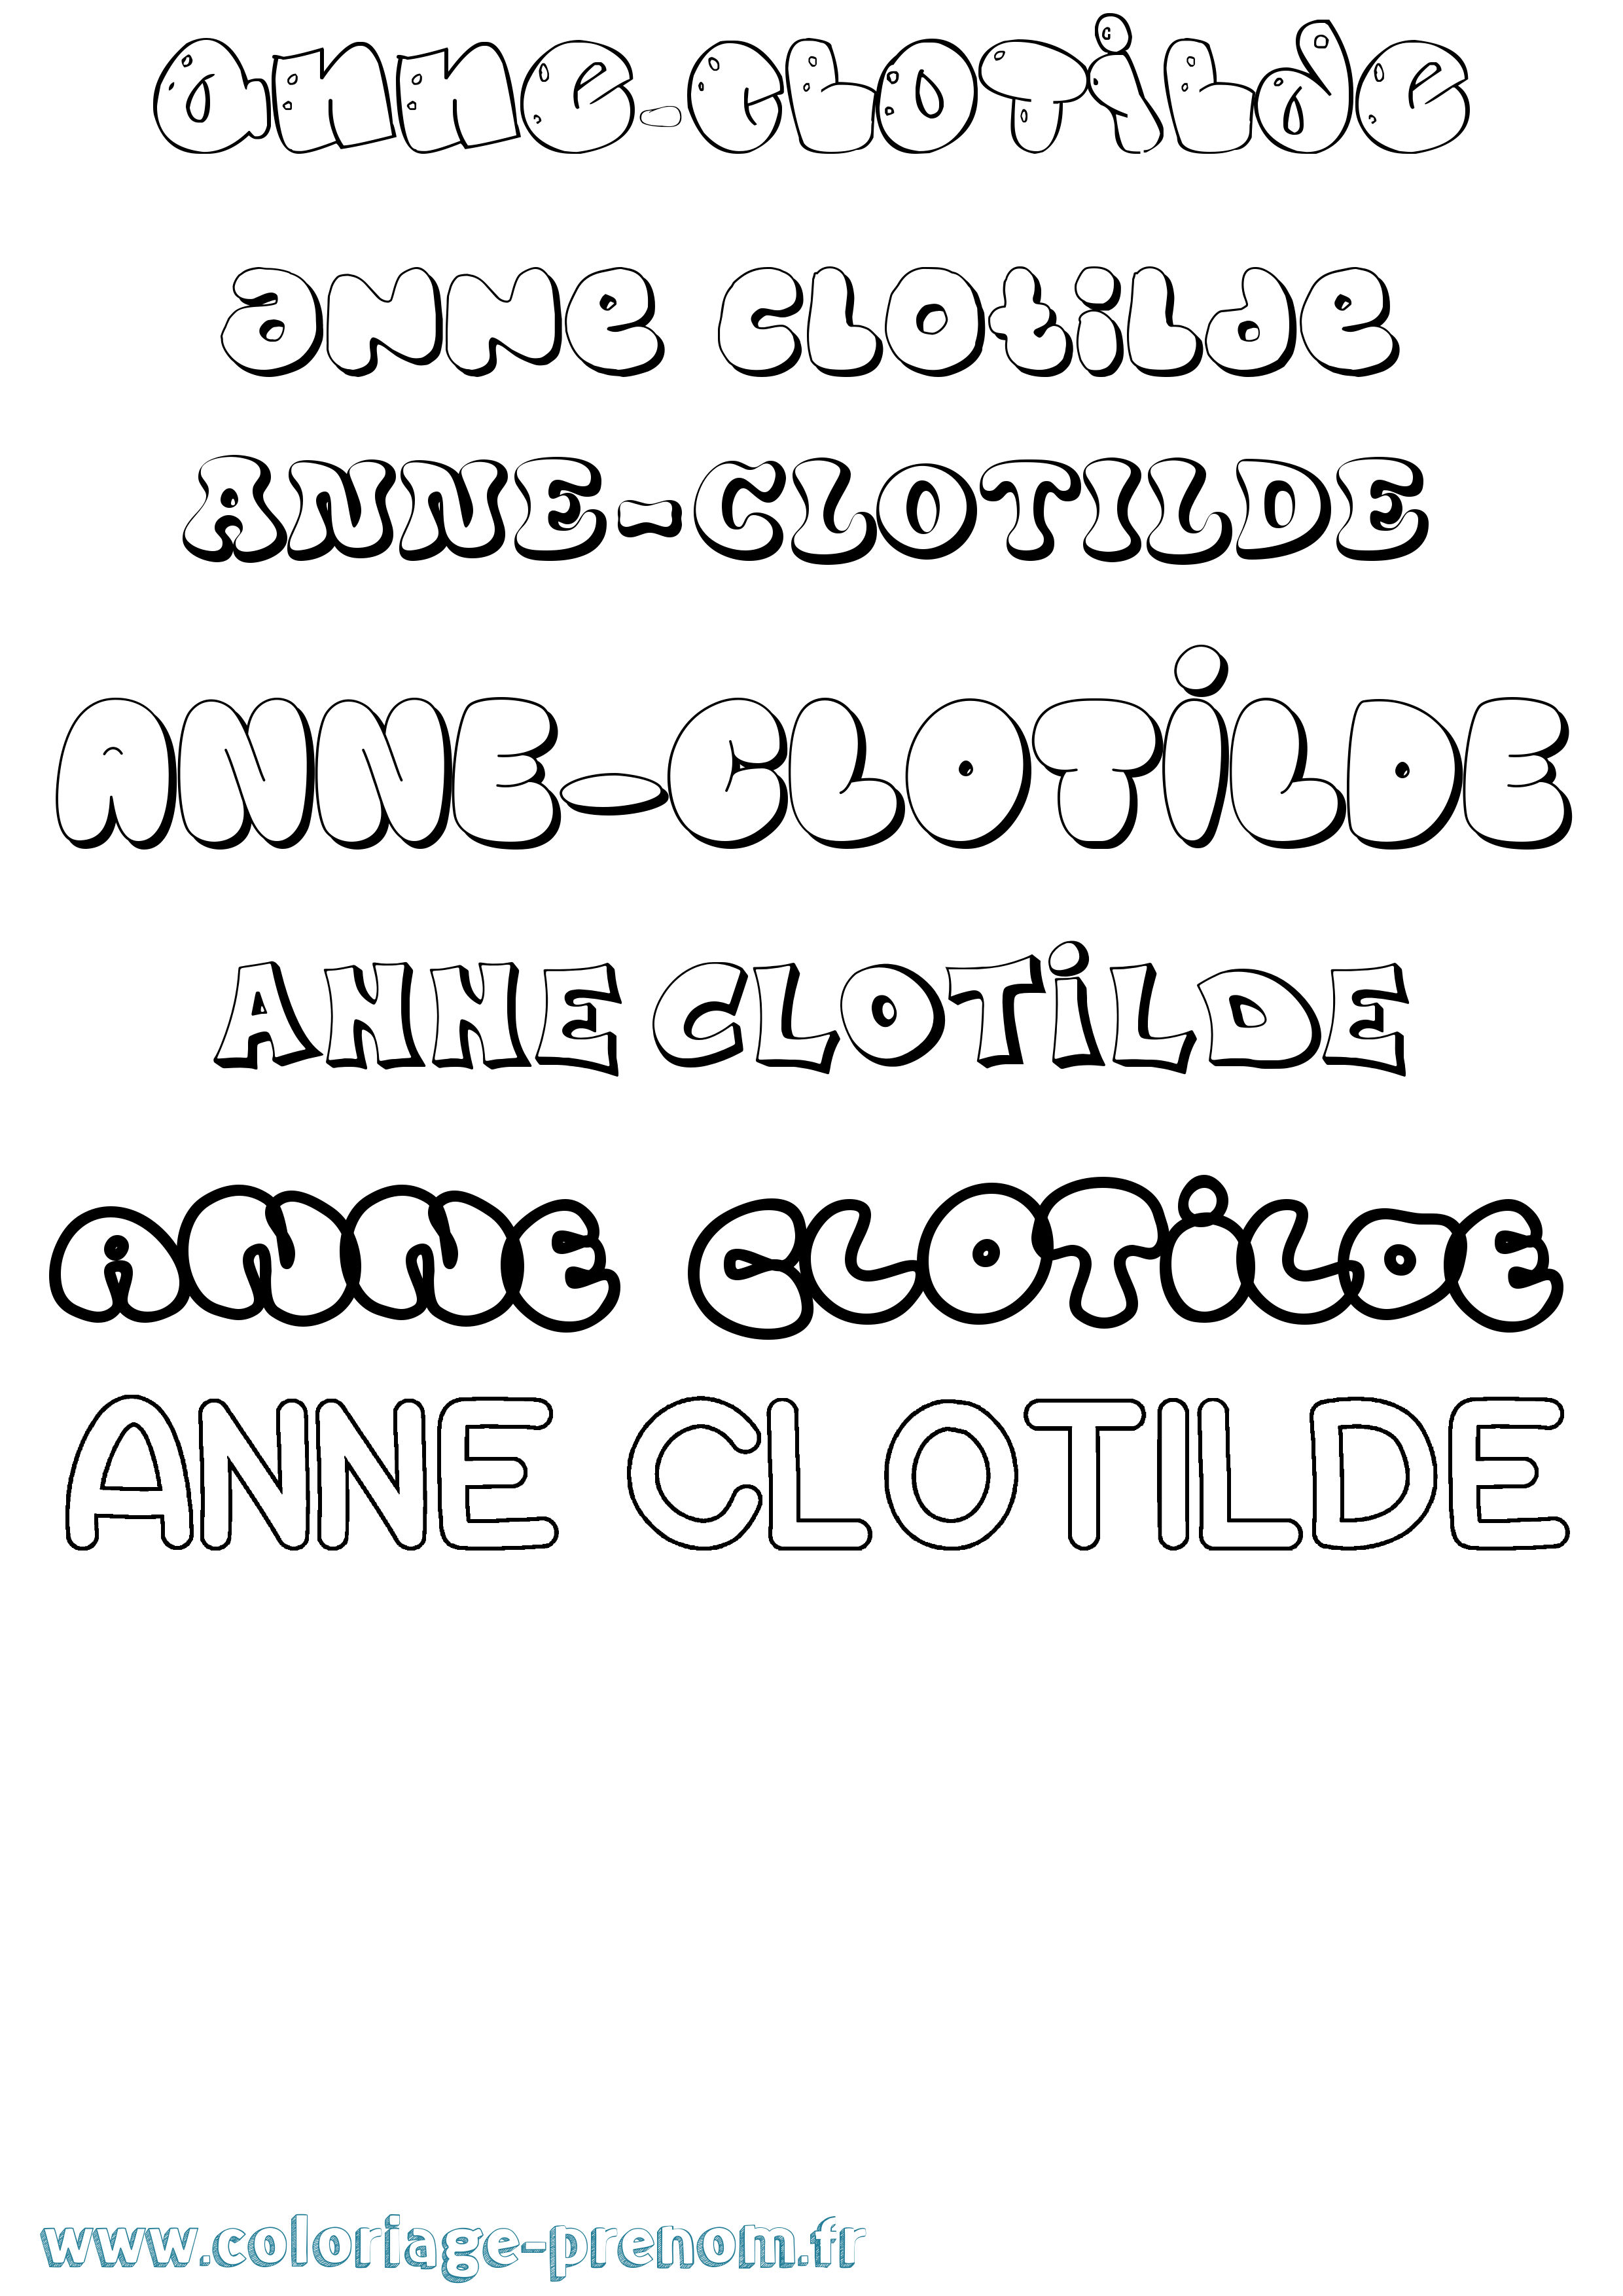 Coloriage prénom Anne-Clotilde Bubble